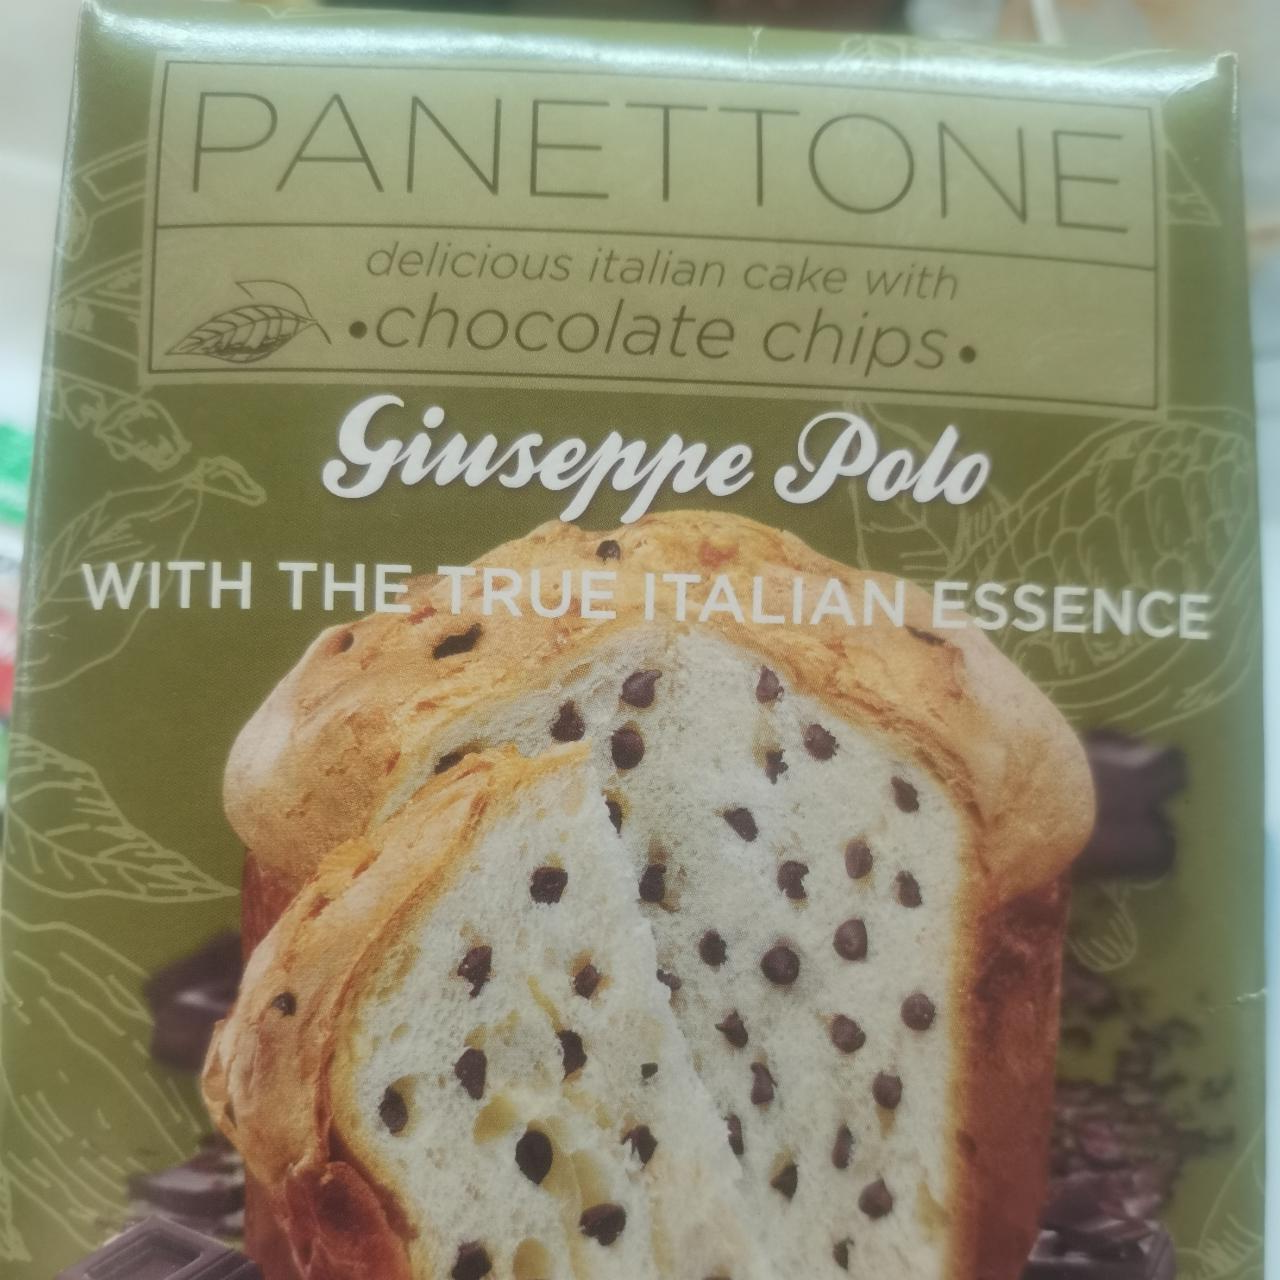 Фото - Різдвяний солодкий хліб Panettone з шоколадними крихтами Giuseppe Polo